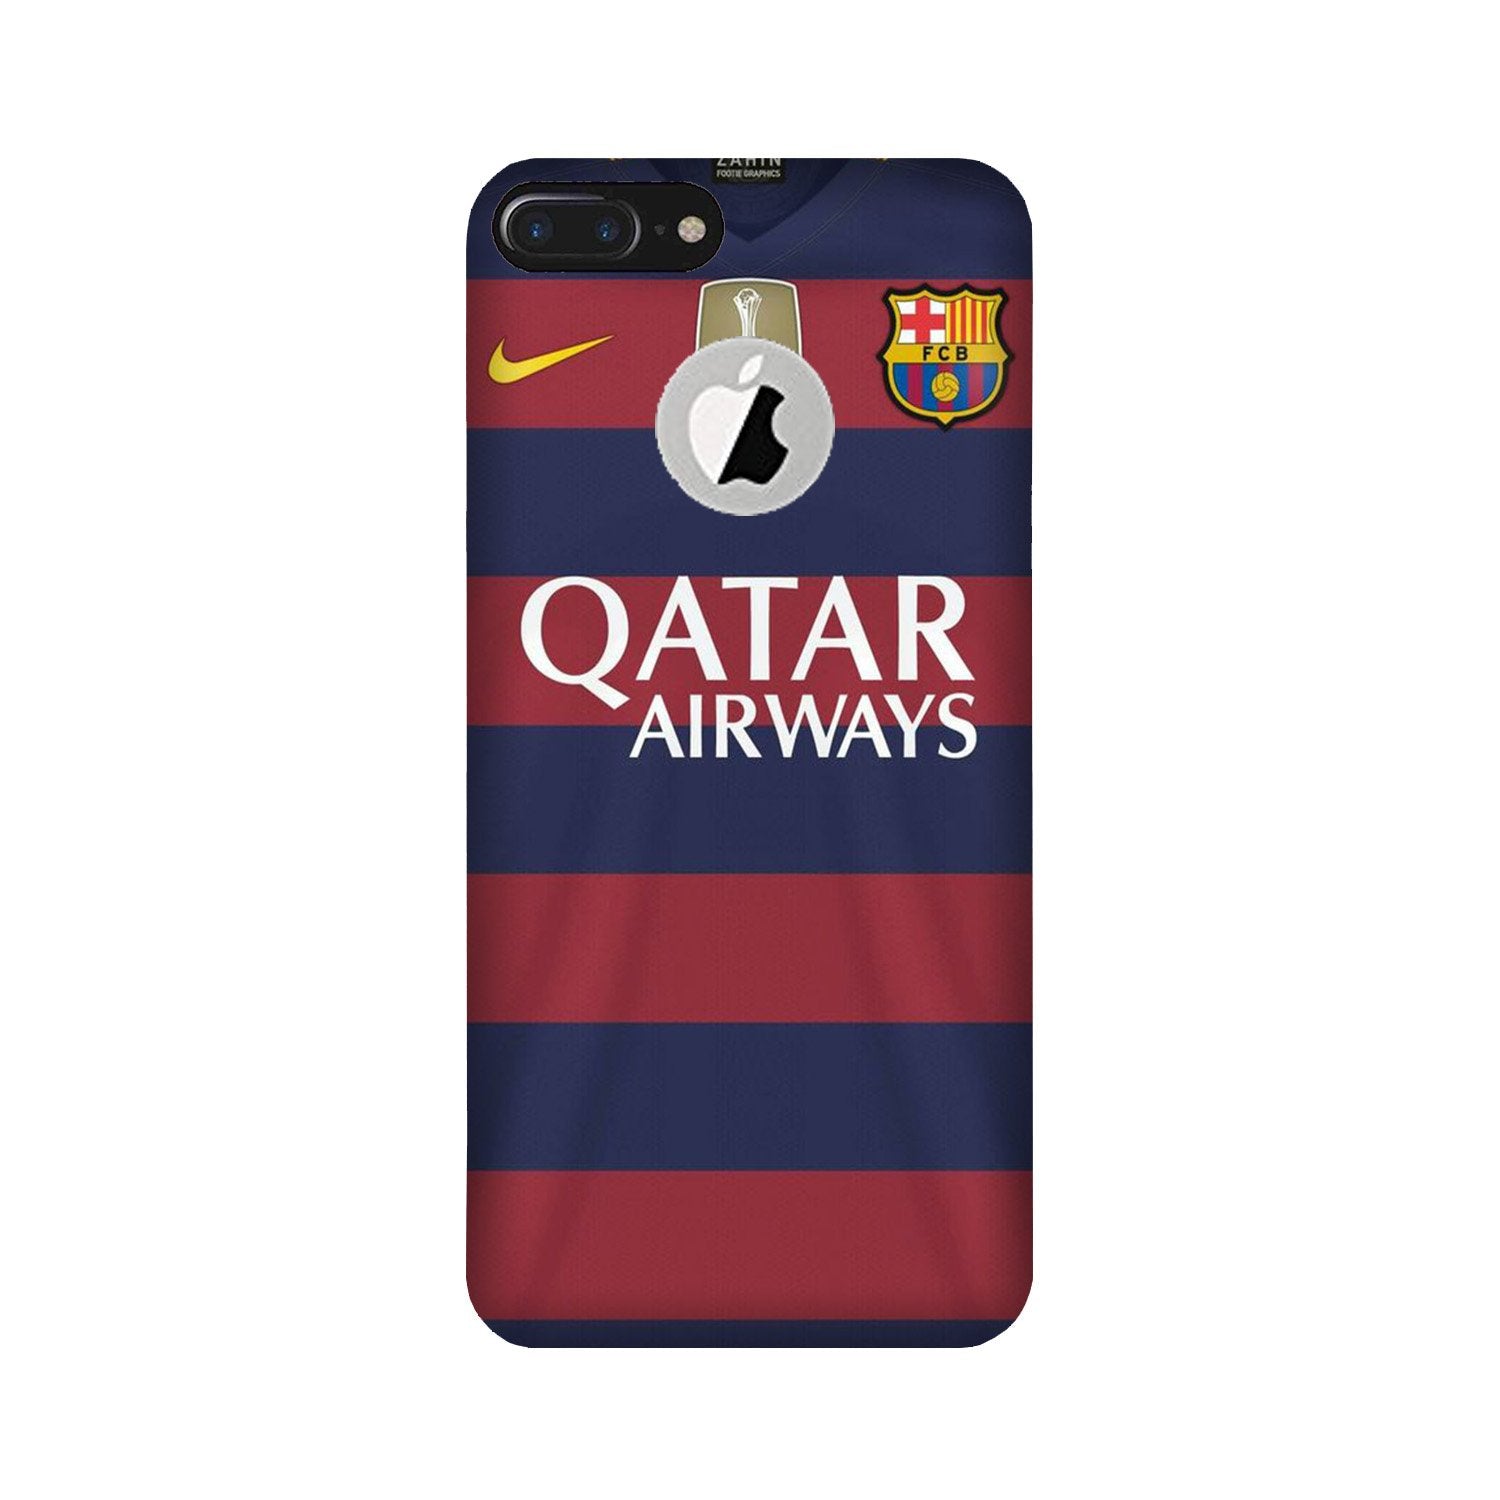 Qatar Airways Case for iPhone 7 Plus logo cut(Design - 160)